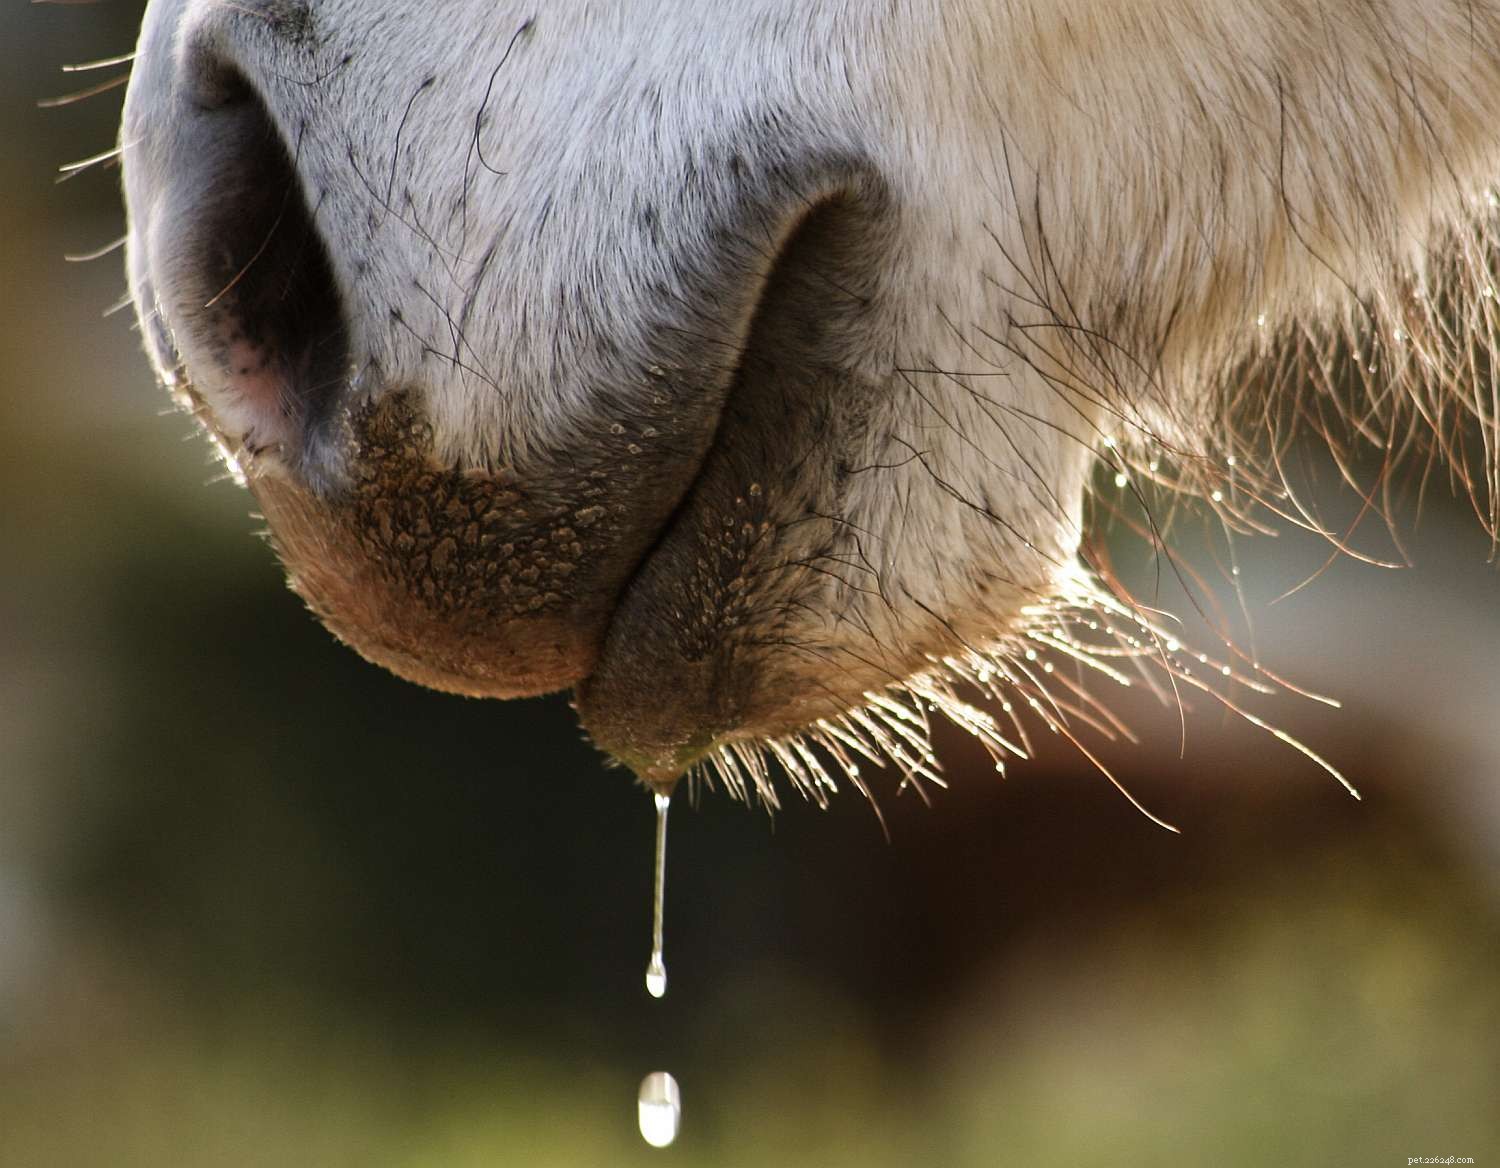 12 способов, которыми ваша лошадь сообщает вам, что ей нужно проверить зубы